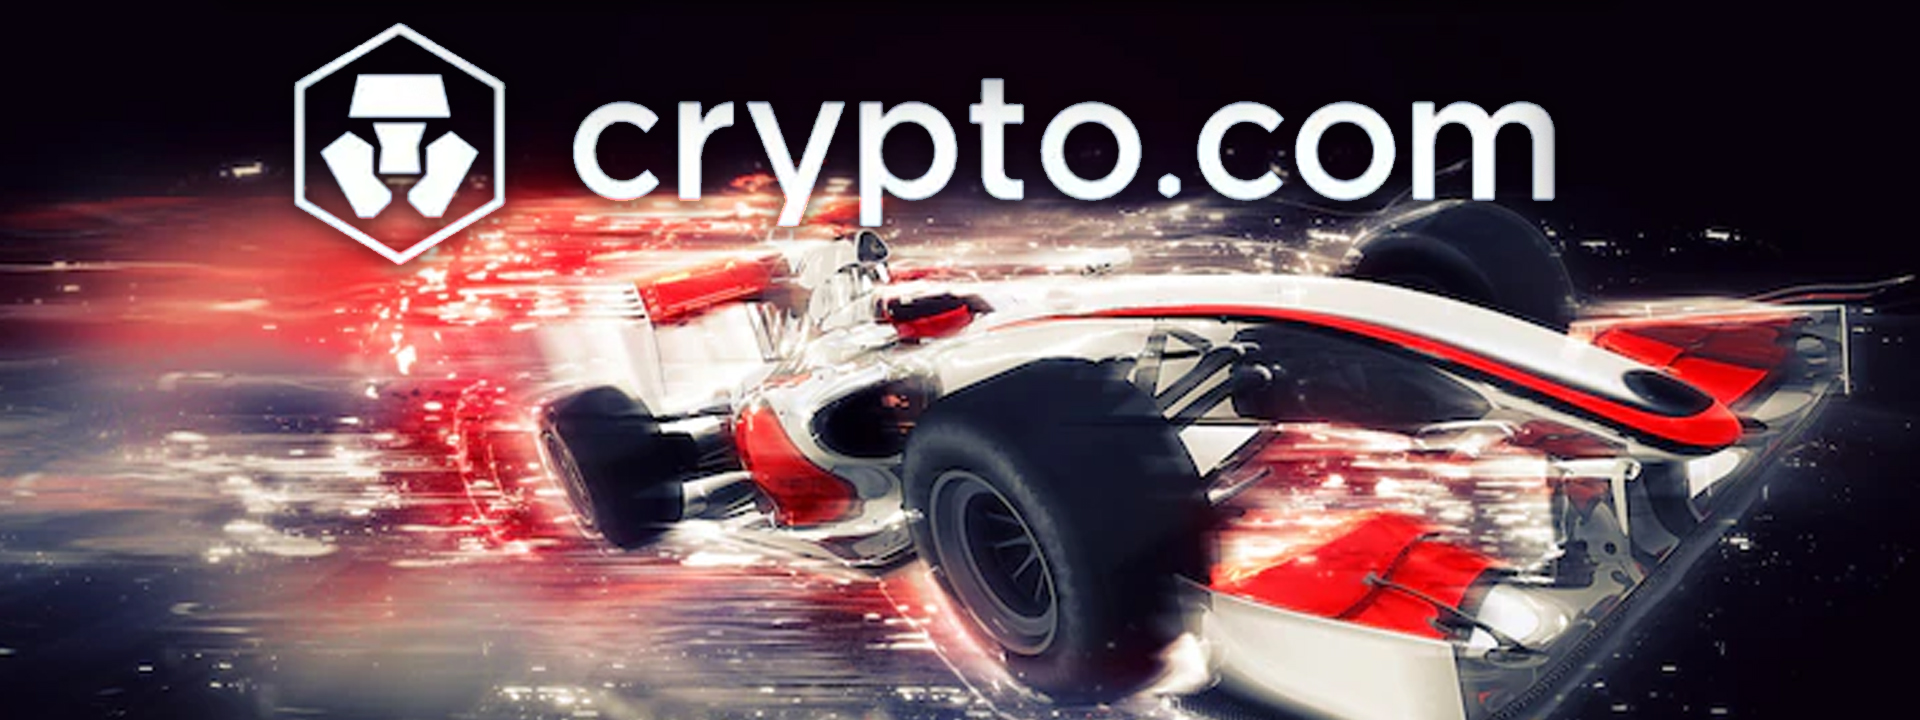 Formula 1 Crypto.com Miami Grand Prix Announces Hard Rock® as First  Founding Partner - Formula 1 Crypto.com Miami Grand Prix